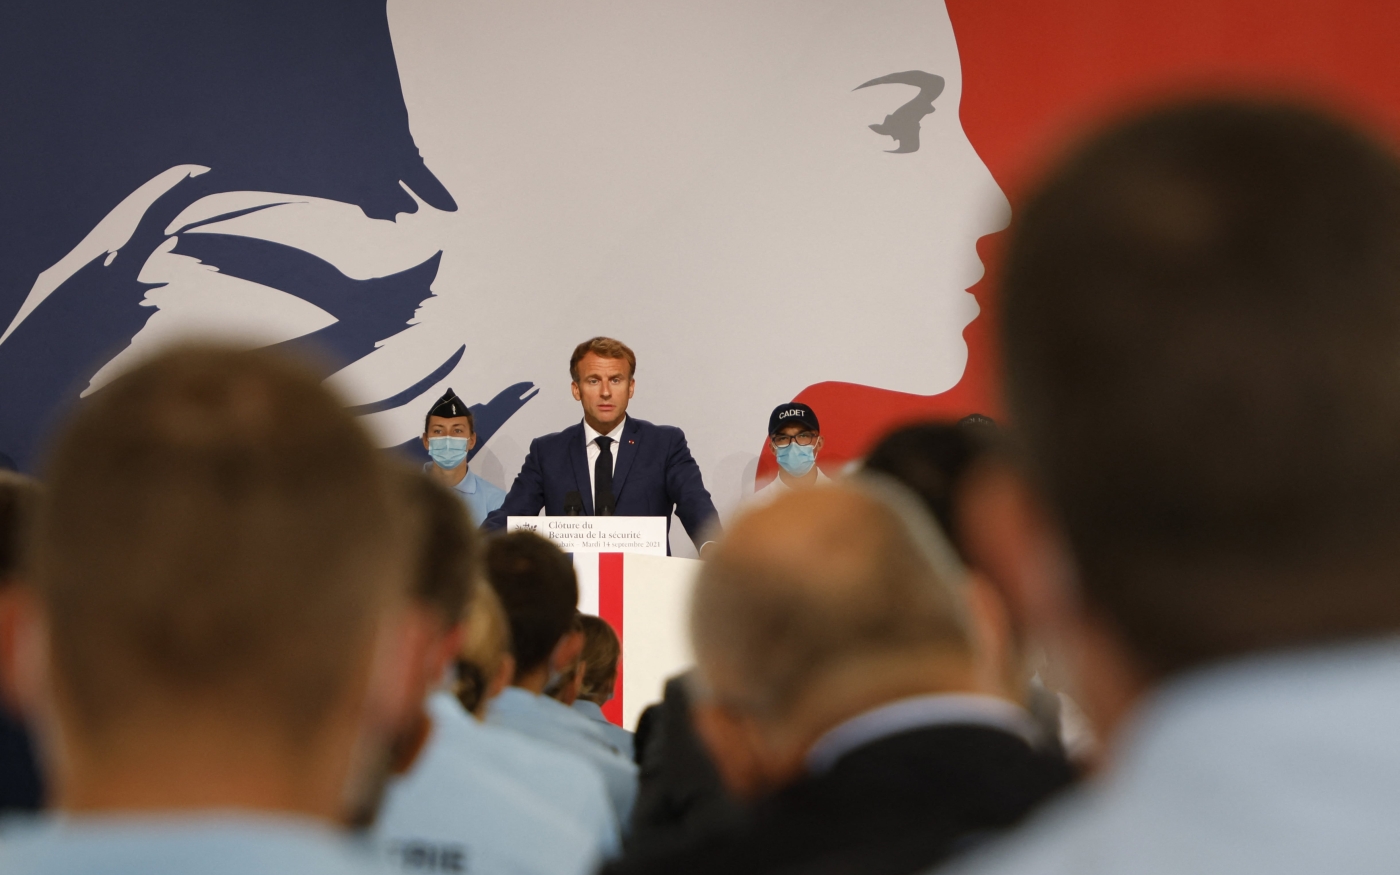 Le président français Emmanuel Macron prononce un discours lors de sa visite à l’École nationale de police de Roubaix, le 14 septembre 2021 (AFP)